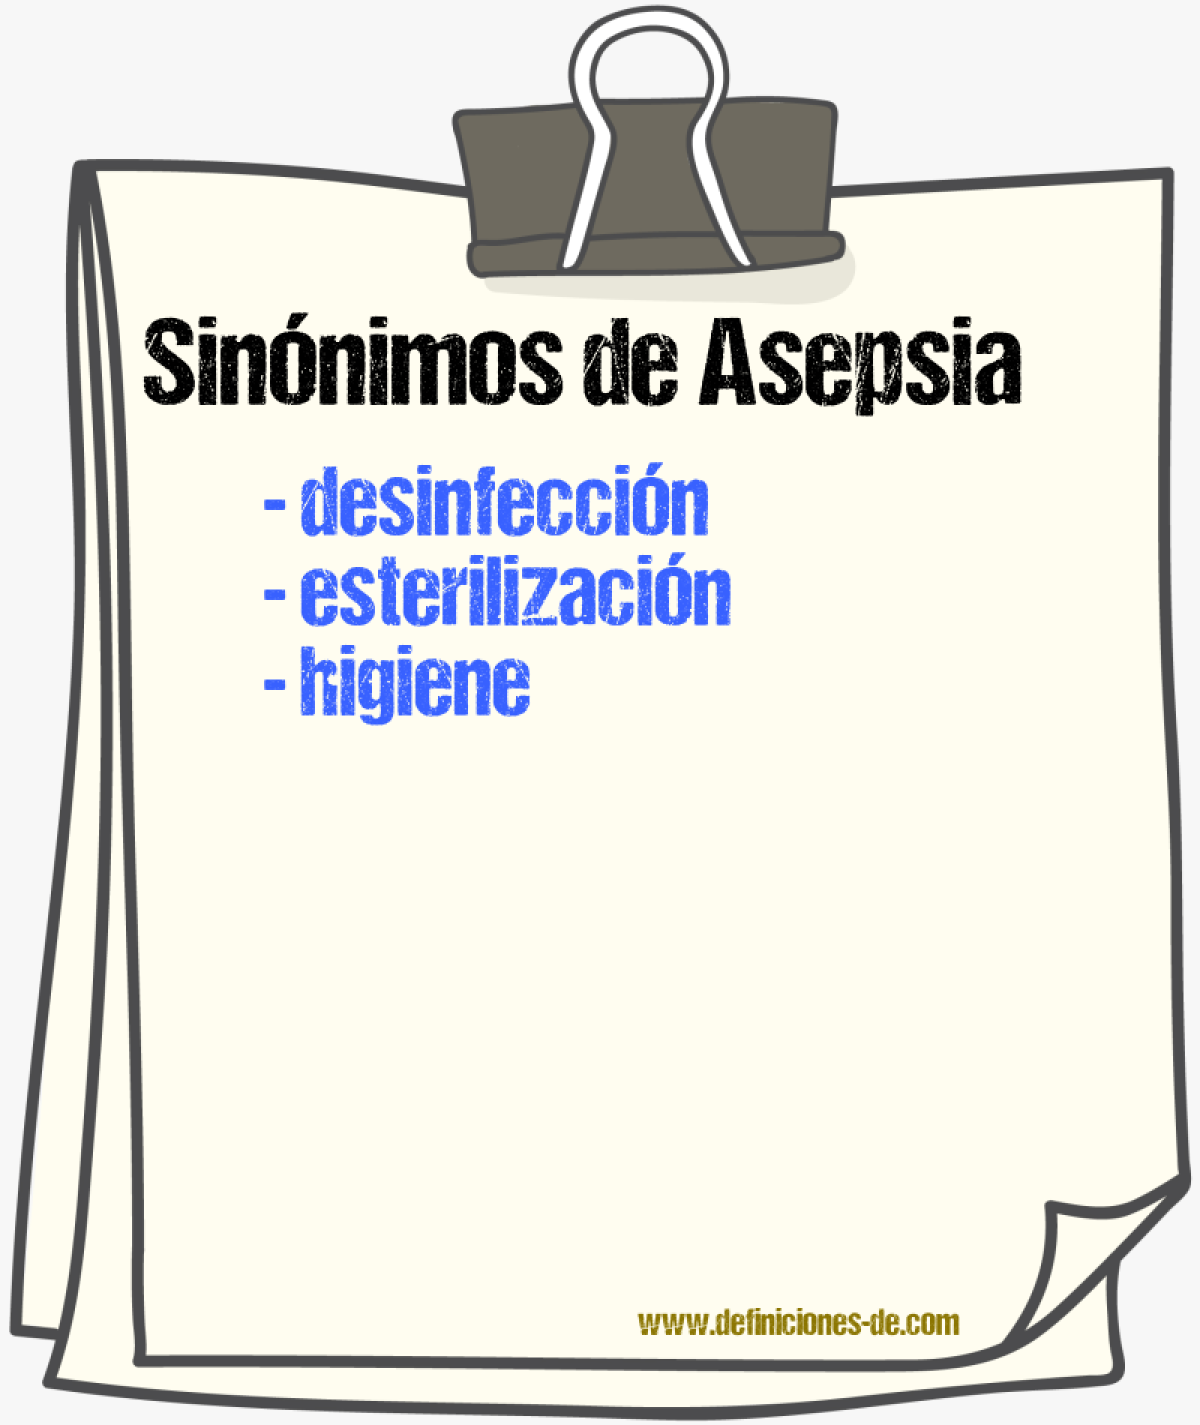 Sinónimos de asepsia